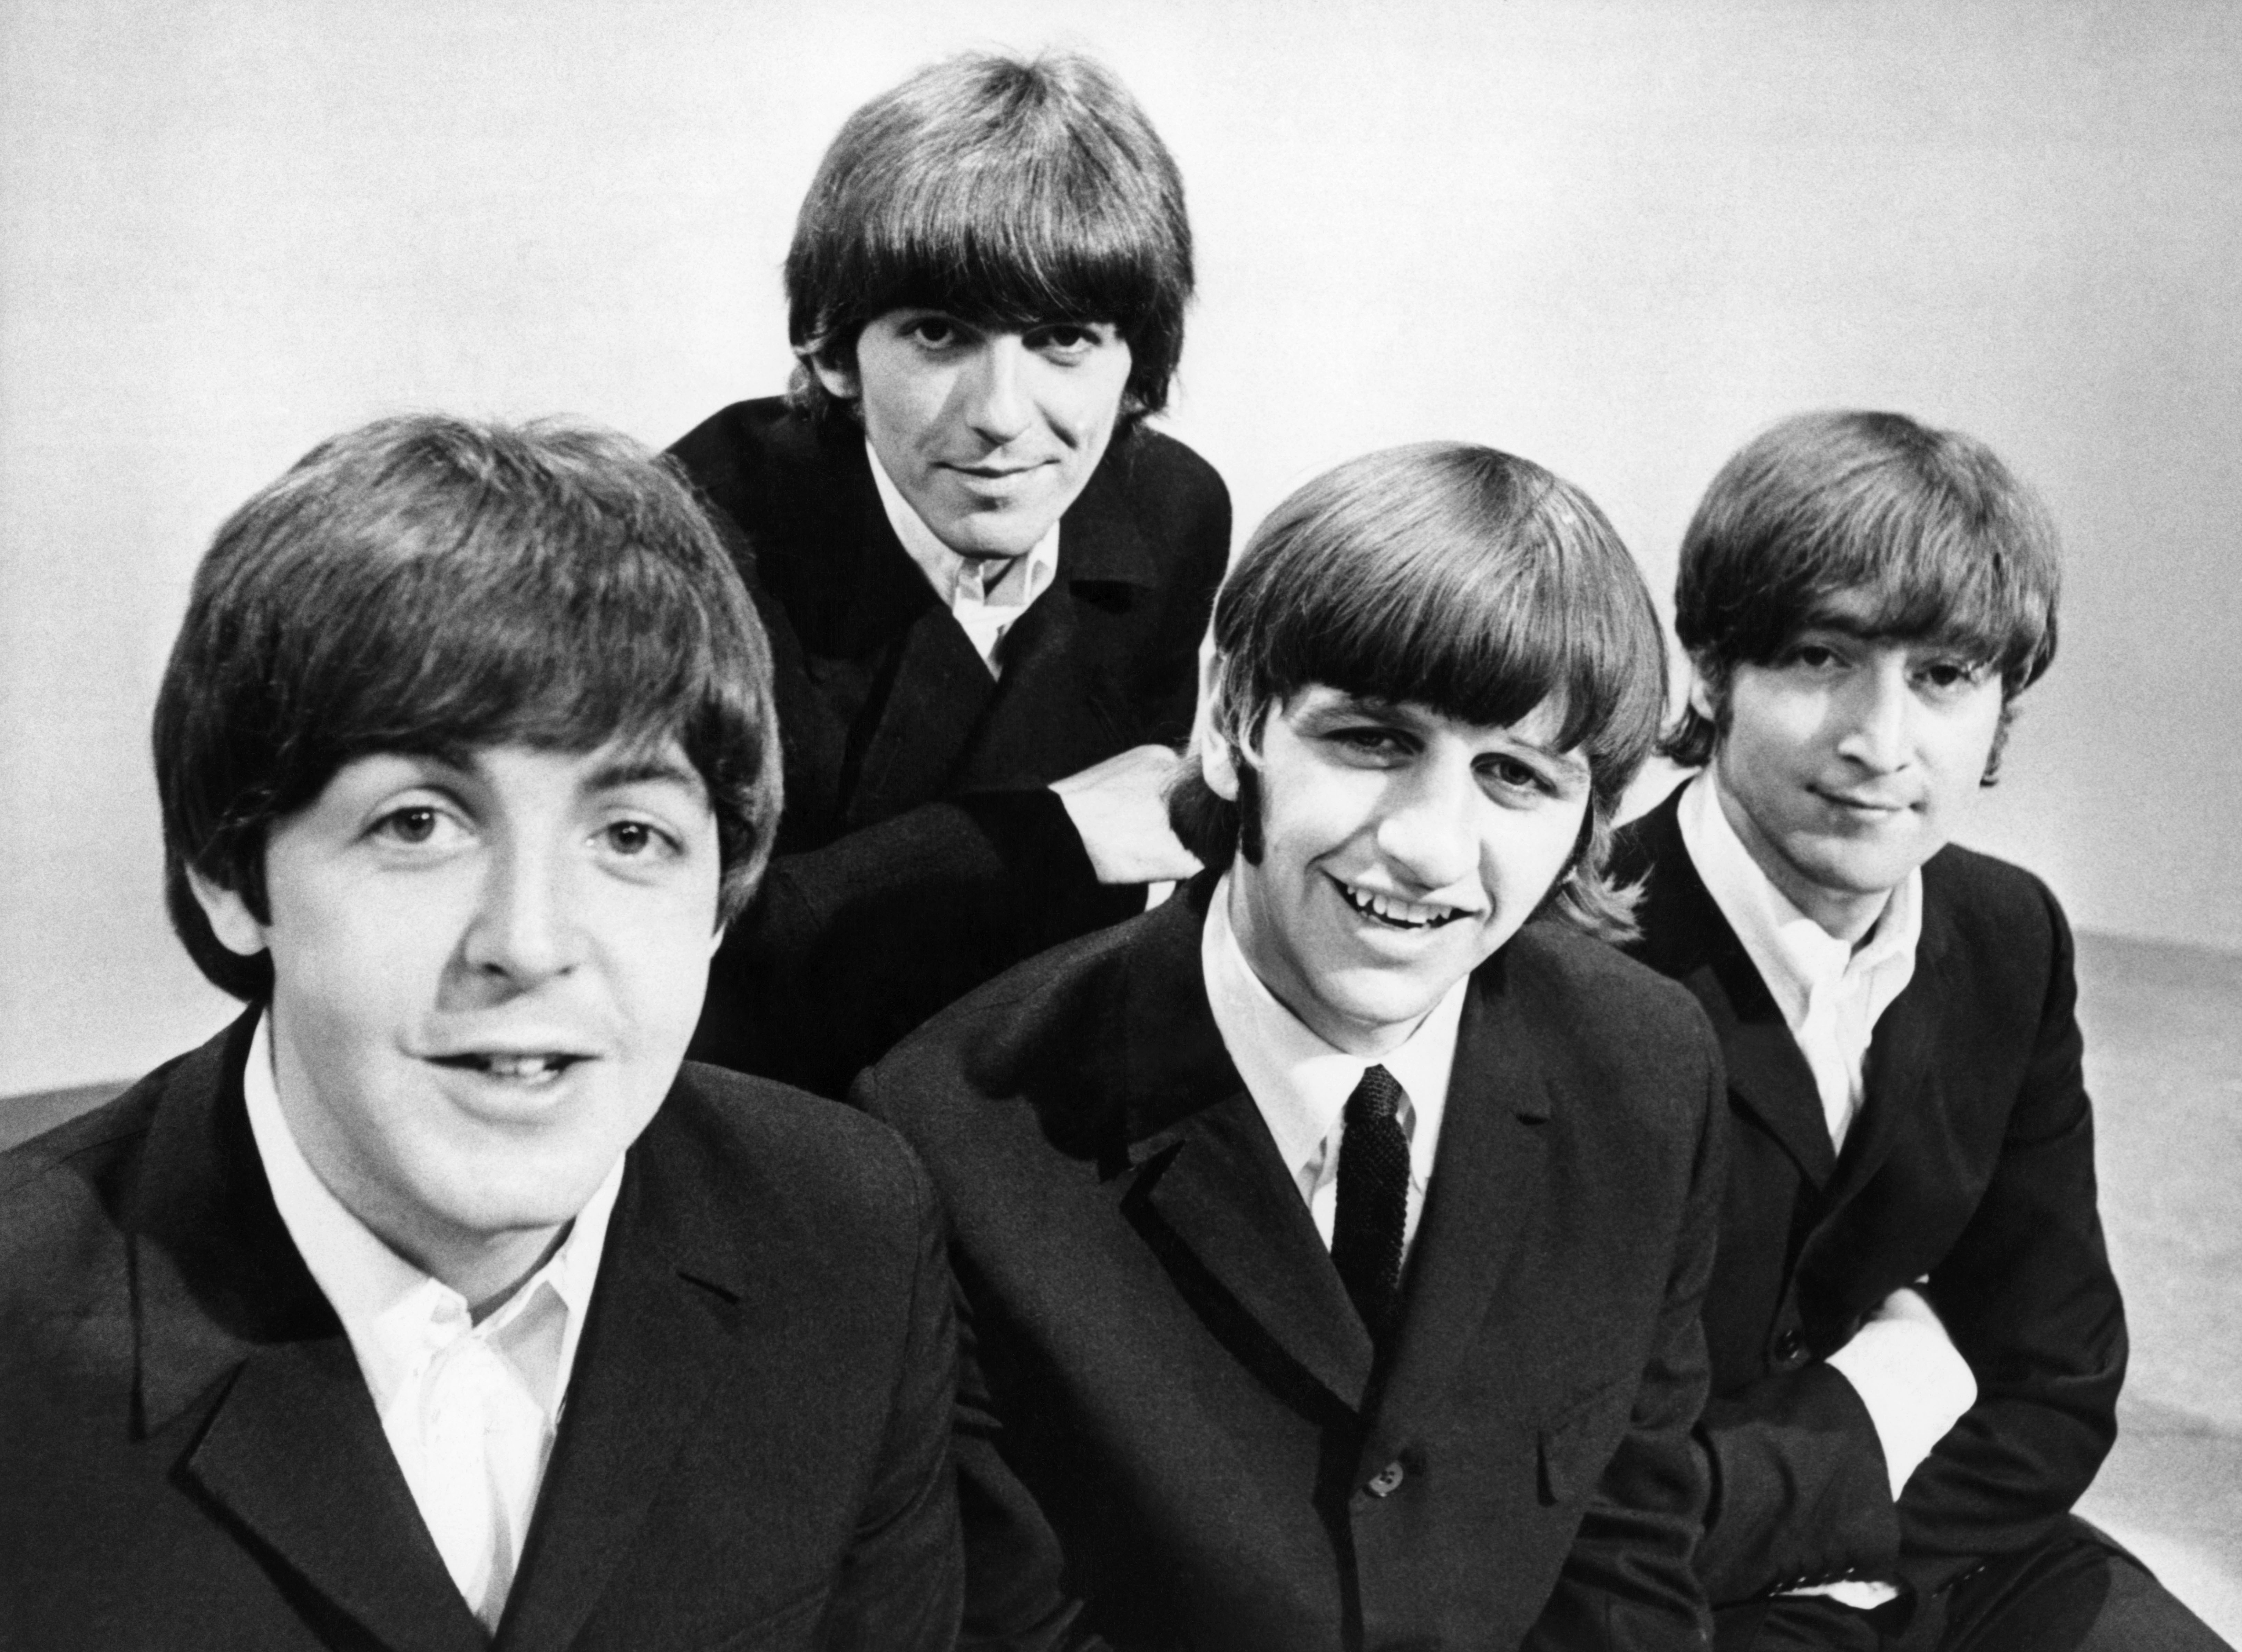 Los componentes del grupo The Beatles, Paul McCartney (bajista), George Harrison (guitarra), Ringo Starr (batería), y John Lennon (guitarra), durante un posado gráfico en los Estudios de televisión de la BBC en Londres (EFE./Archivo) 